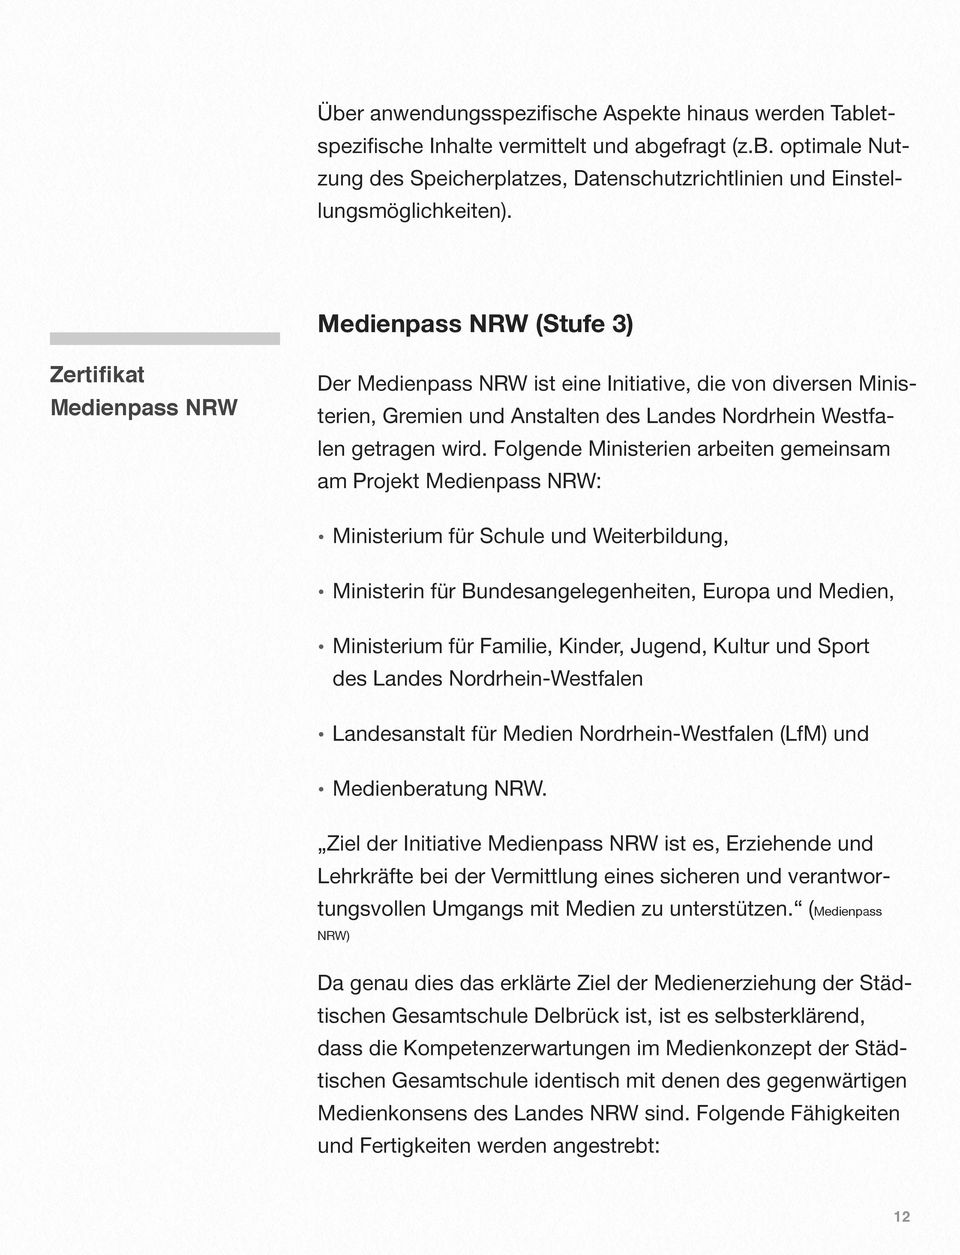 Folgende Ministerien arbeiten gemeinsam am Projekt Medienpass NRW: Ministerium für Schule und Weiterbildung, Ministerin für Bundesangelegenheiten, Europa und Medien, Ministerium für Familie, Kinder,